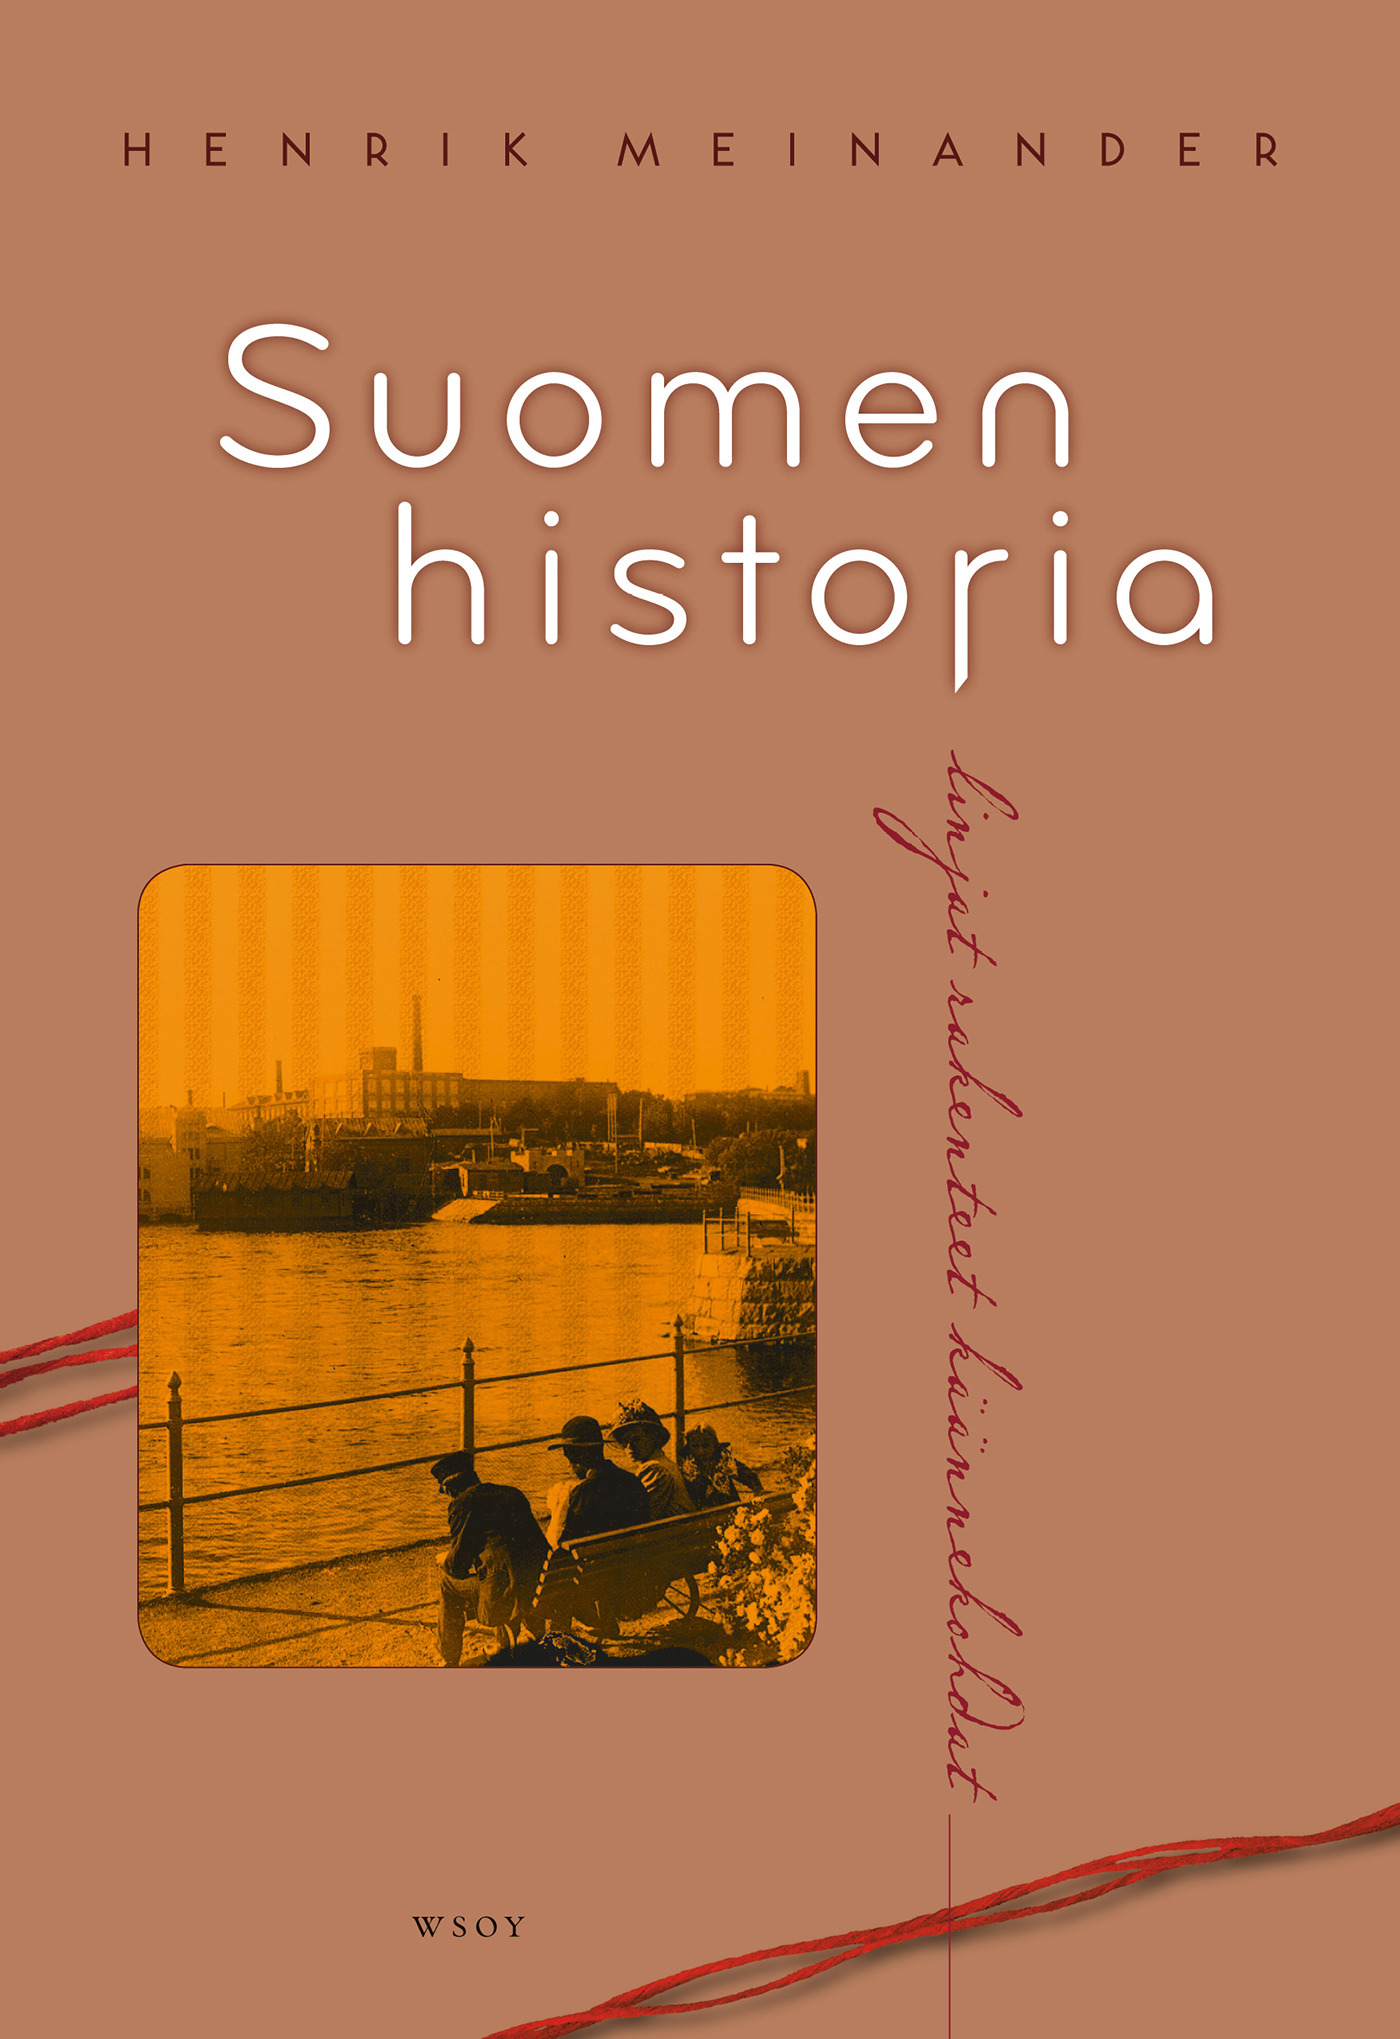 Seppälä, Juha - Suomen historia, e-kirja